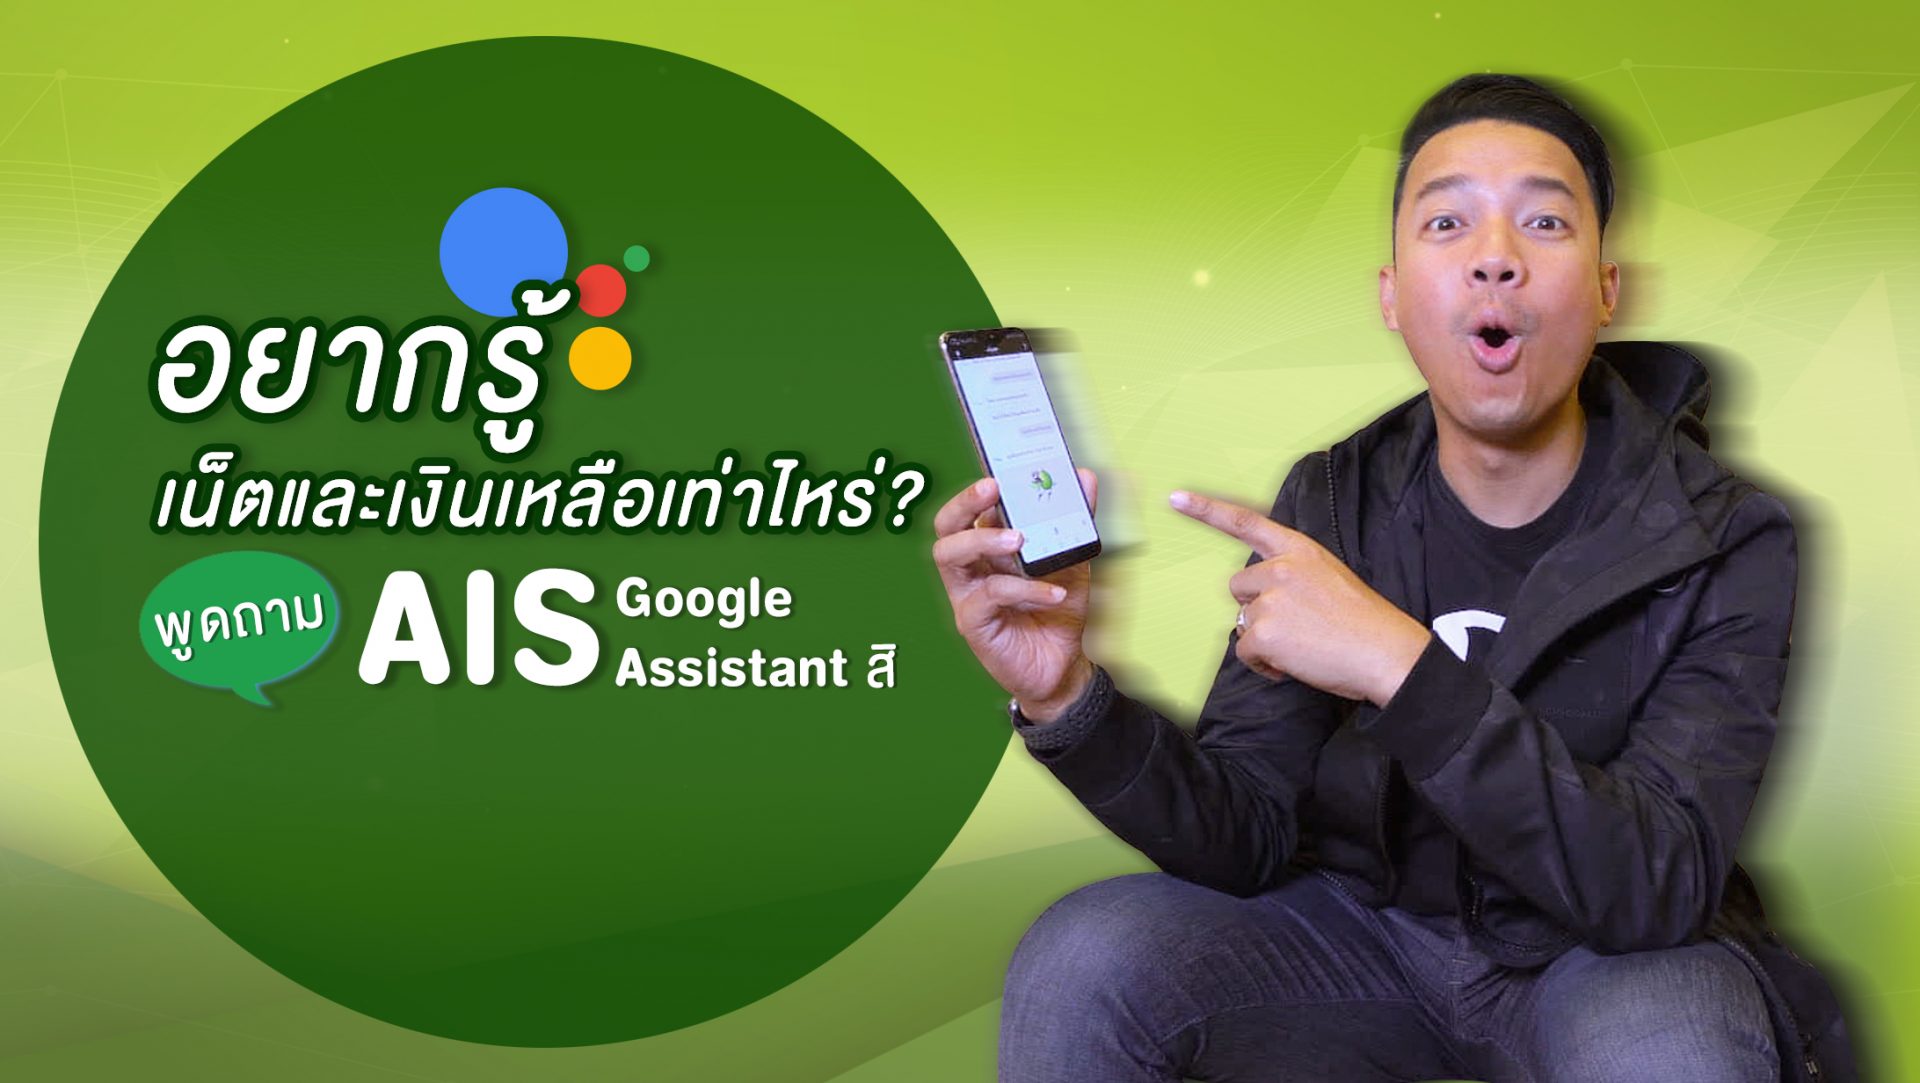 อยากรู้เน็ตและเงินเหลือเท่าไหร่? พูด,ถาม #AIS บน Google Assistant ได้แล้ว!!